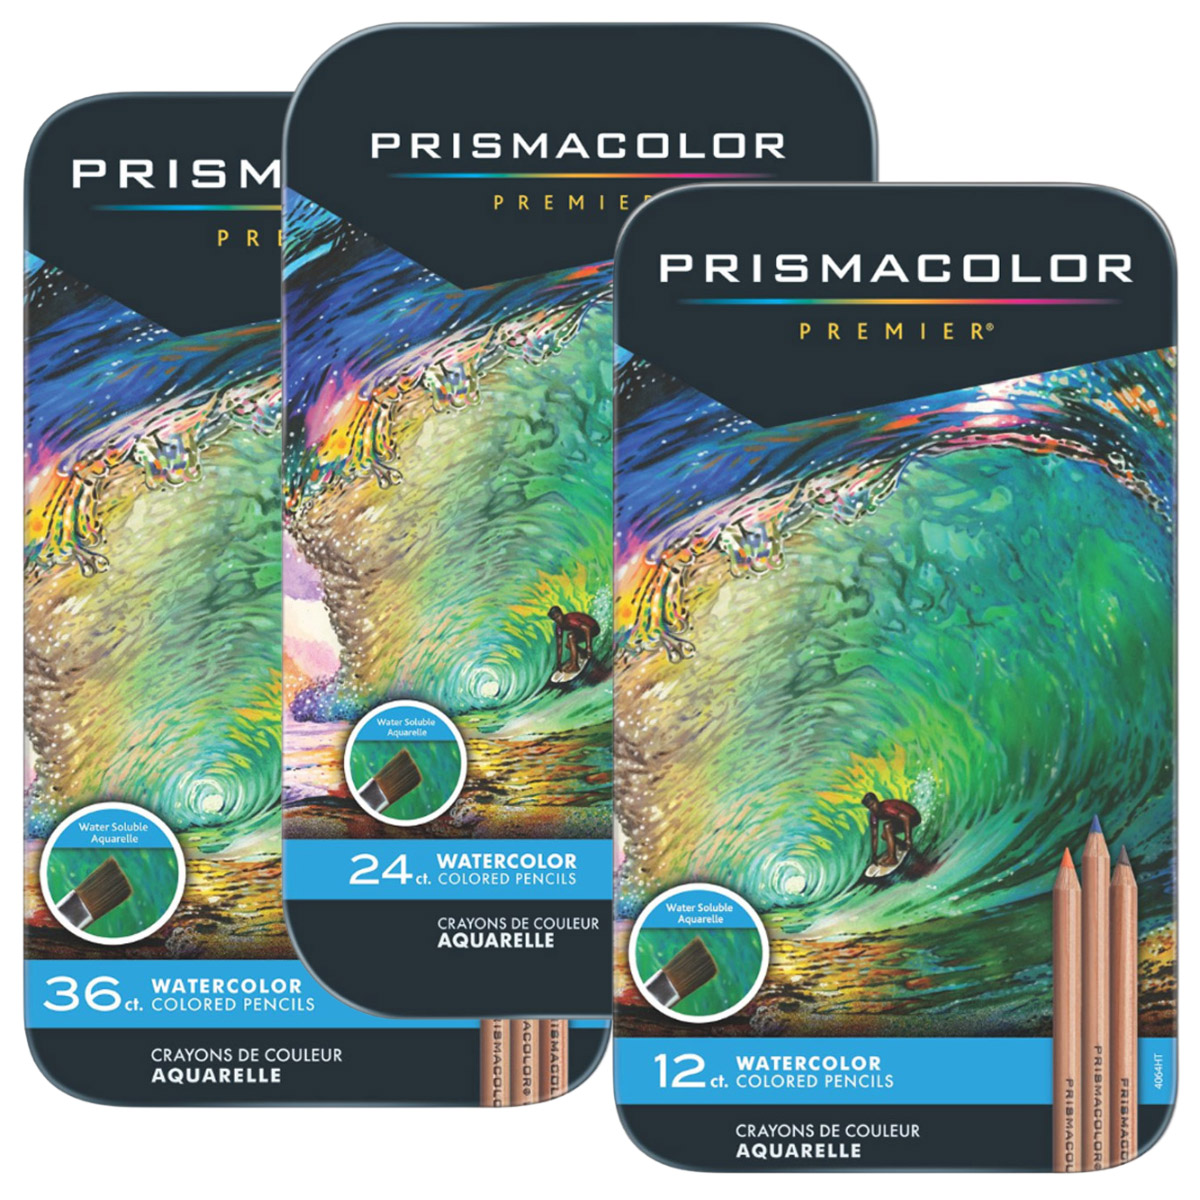 Prismacolor Premiere Watercolour Pencil Sets